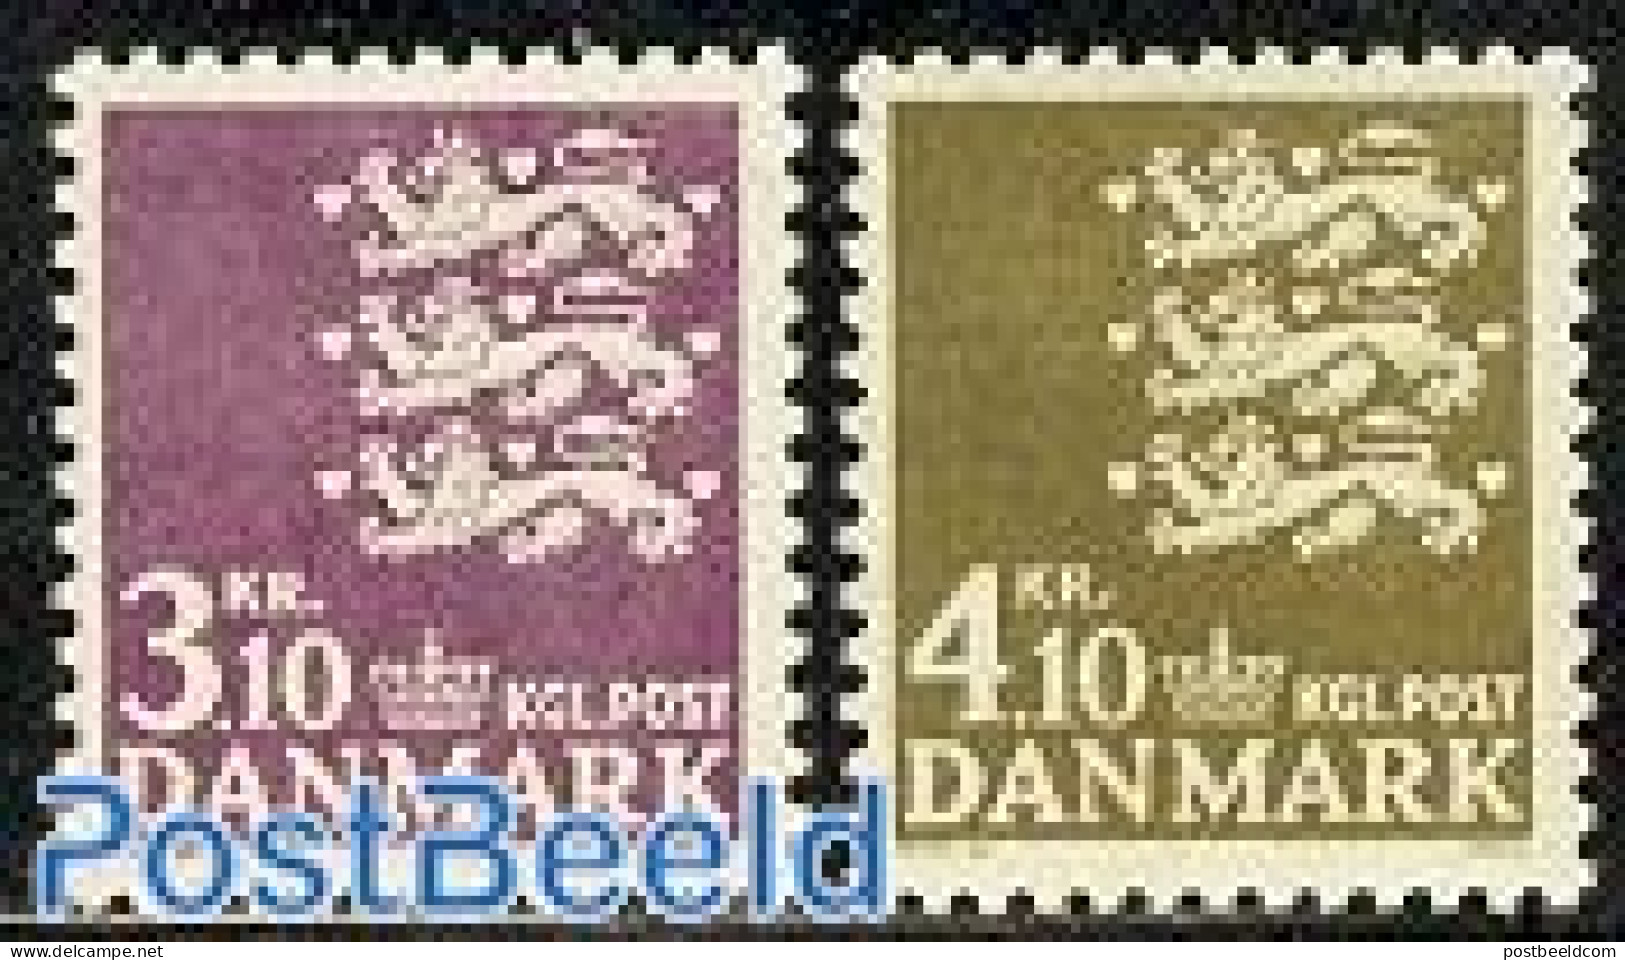 Denmark 1970 Definitives 2v, Mint NH - Unused Stamps